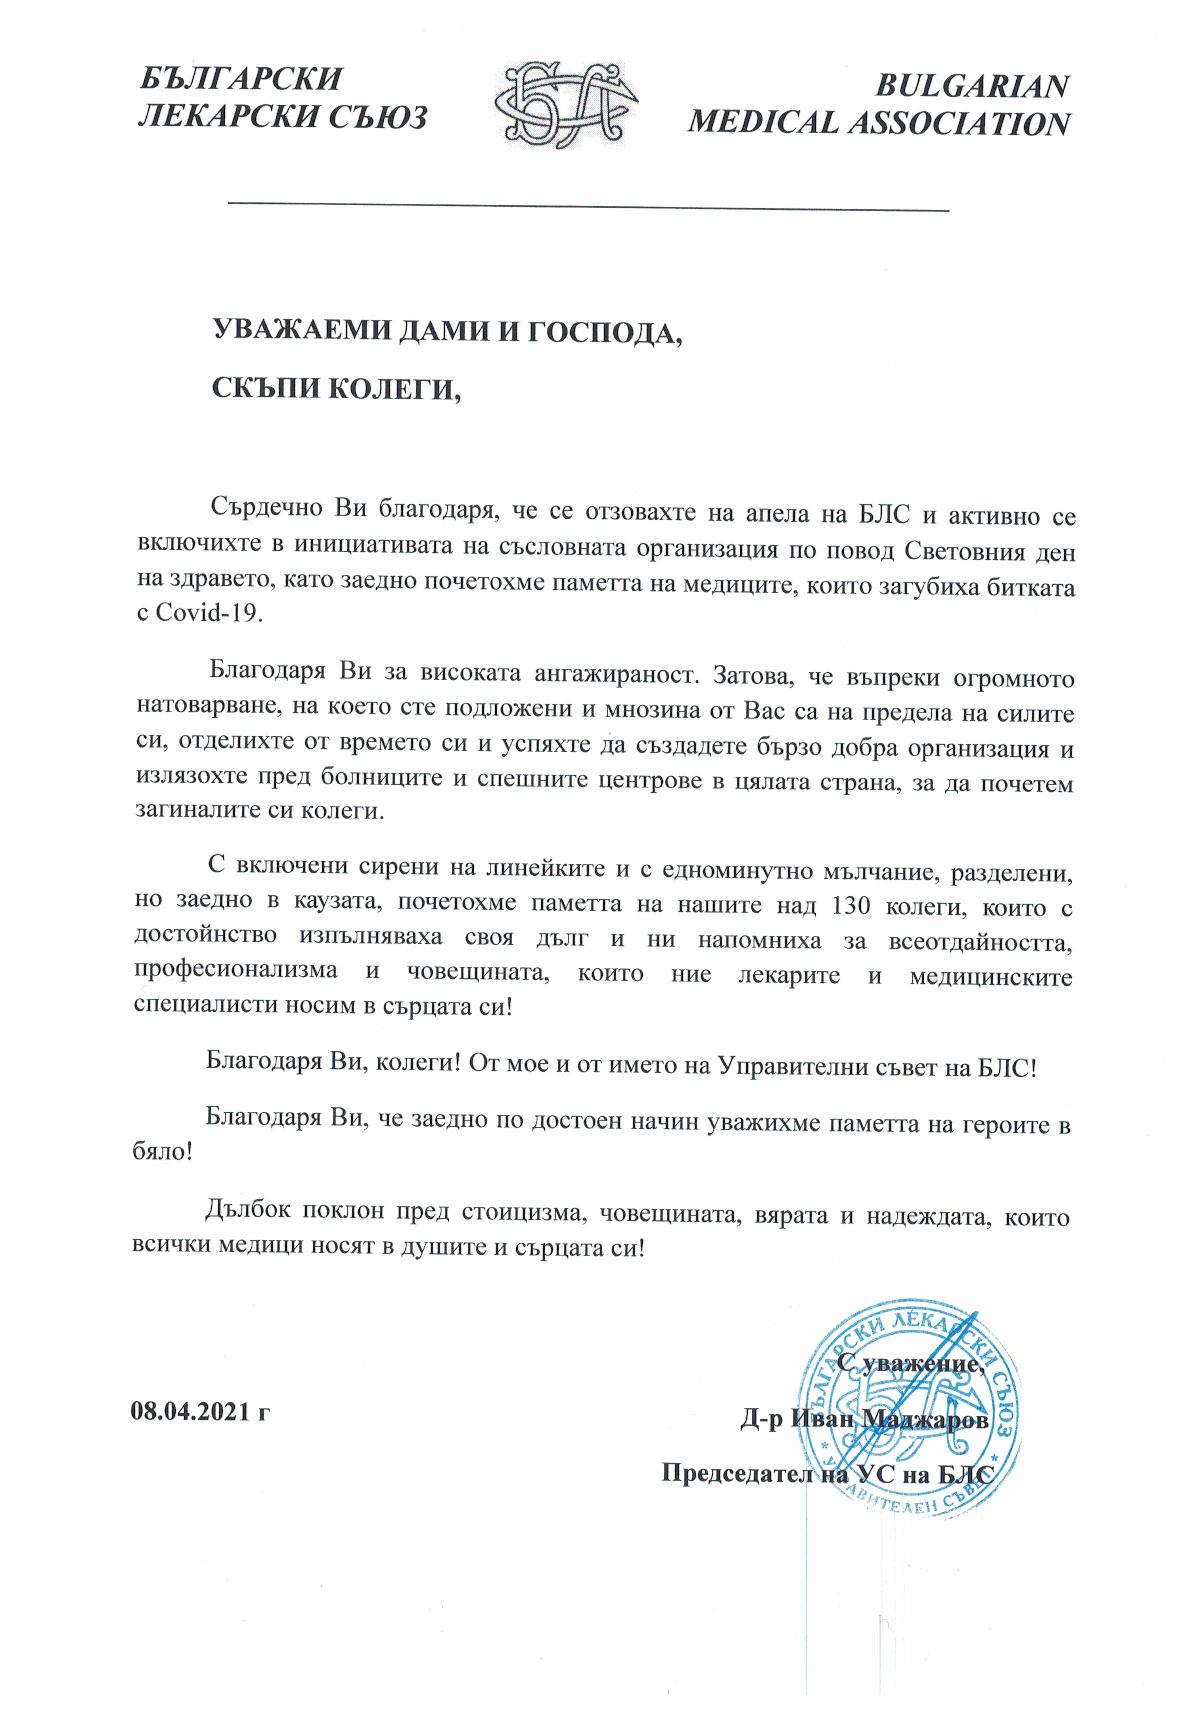 Благодарствено писмо от председателя на БЛС д-р Иван Маджаров